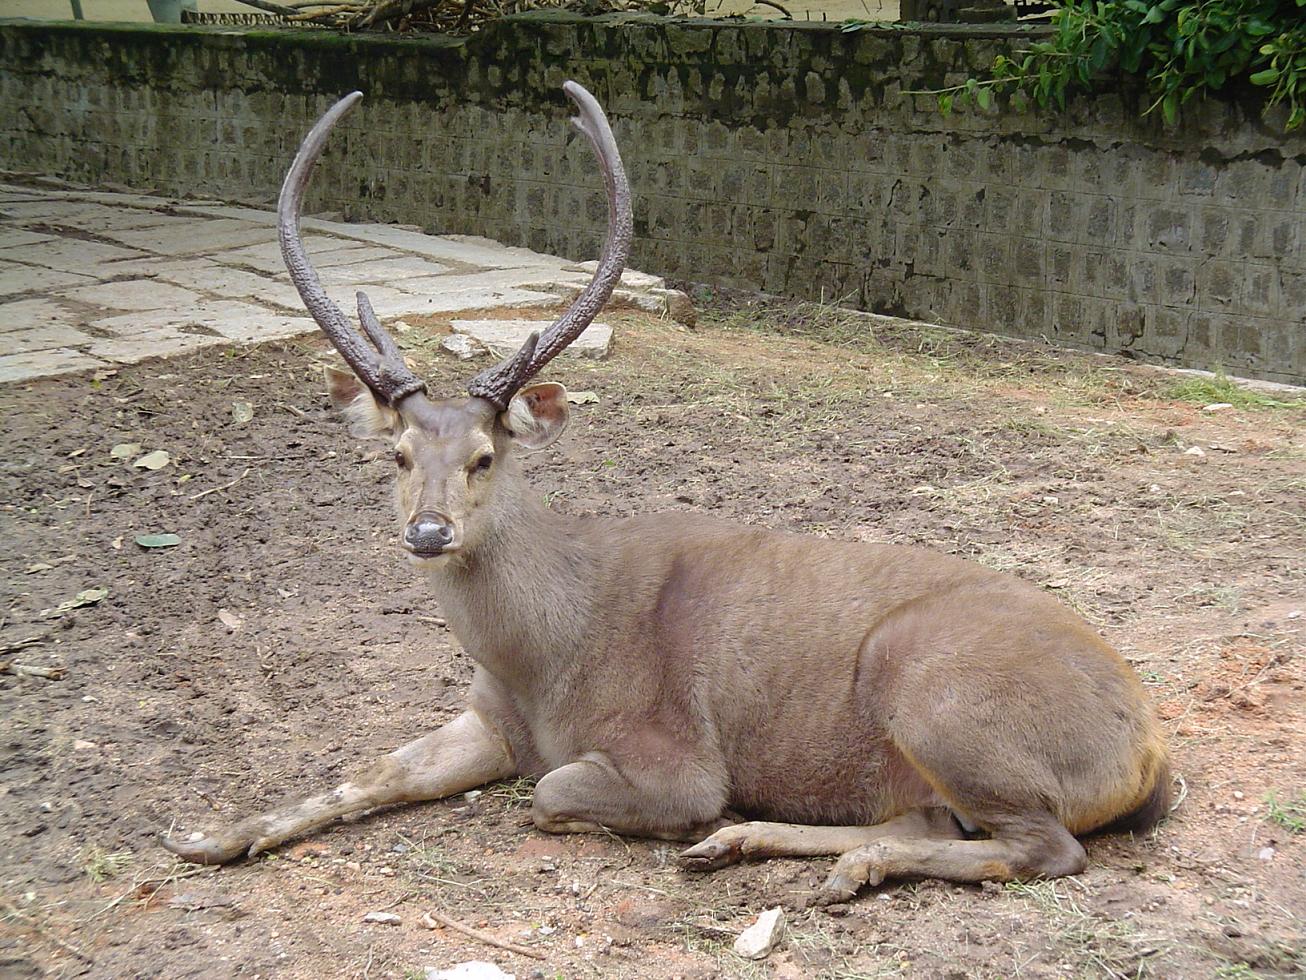 https://upload.wikimedia.org/wikipedia/commons/a/ae/Sambar_deer.JPG